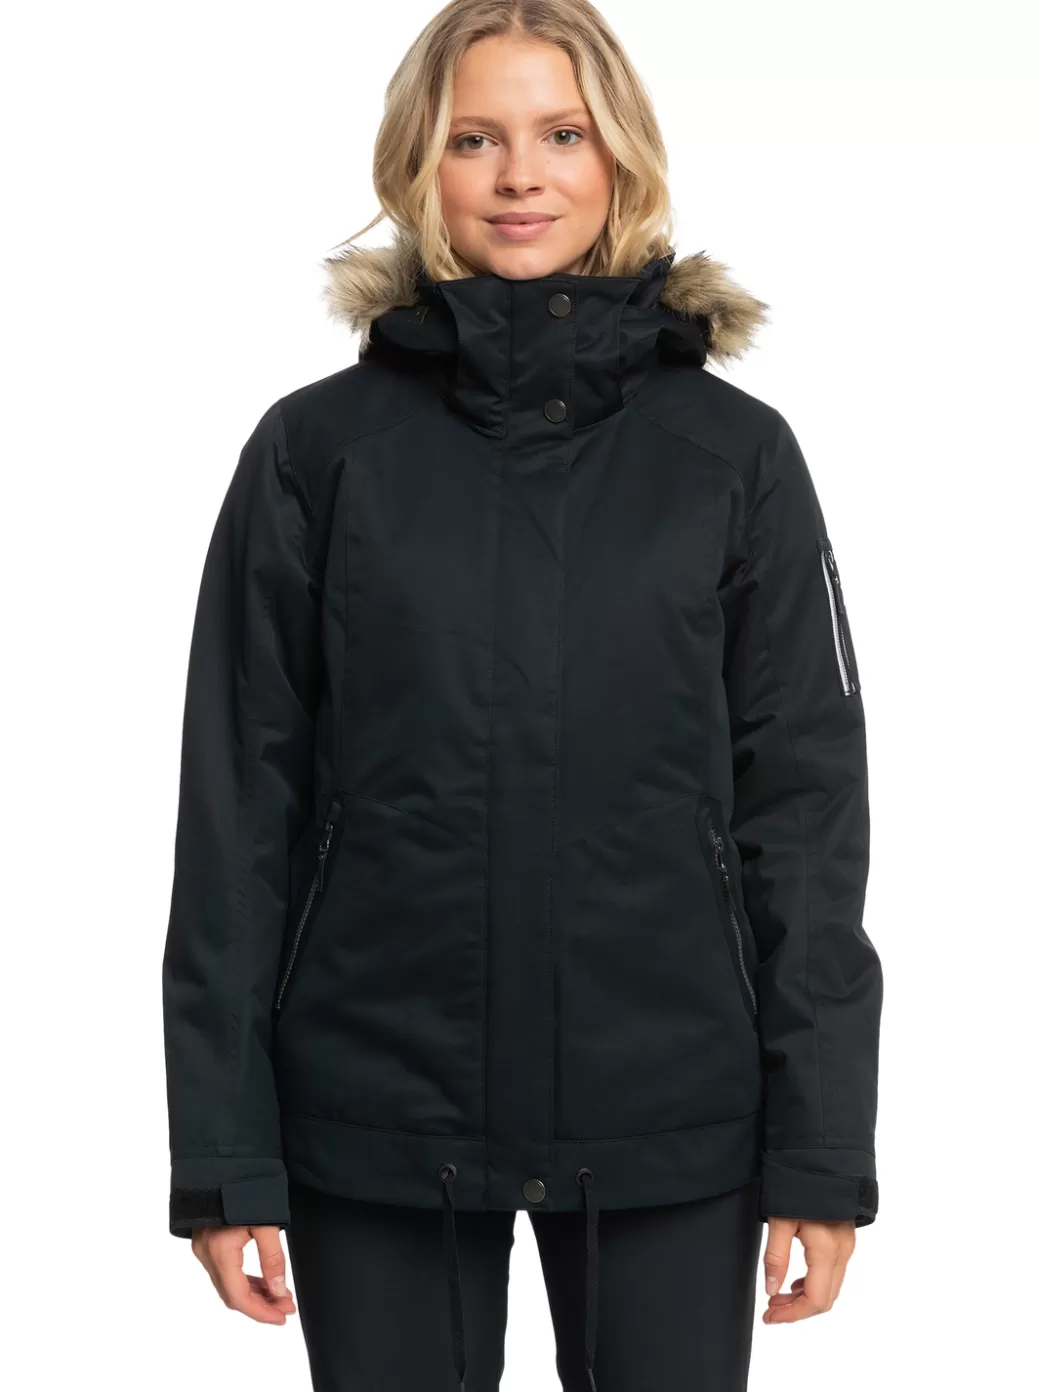 Hydrosmart | Snow Jackets | WOMEN ROXY Meade Technical Snow Jacket True Black